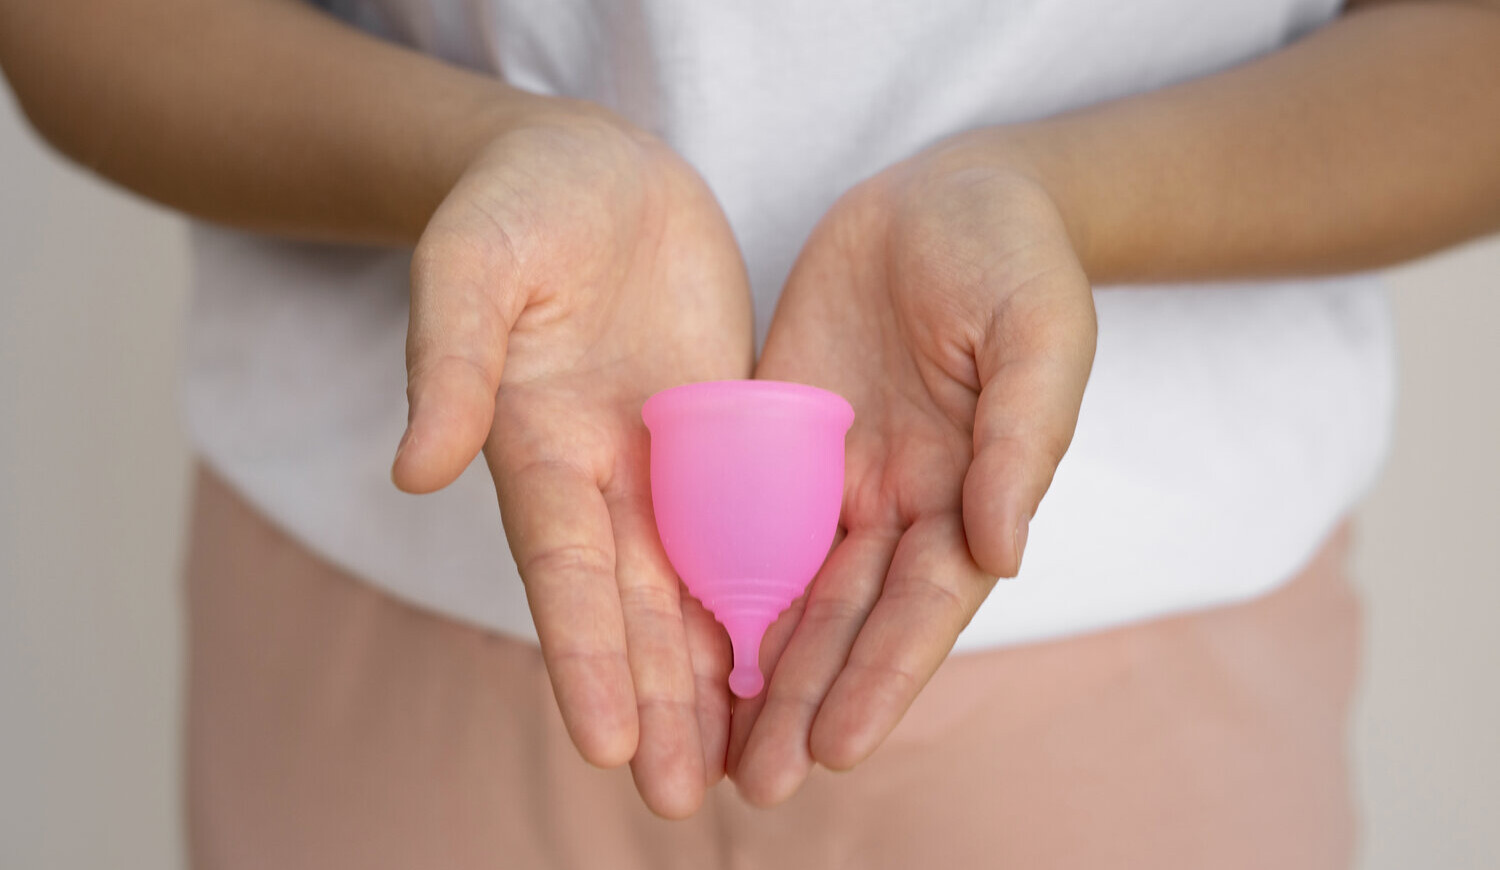 Cupa menstruală: între libertate și confort la menstruație